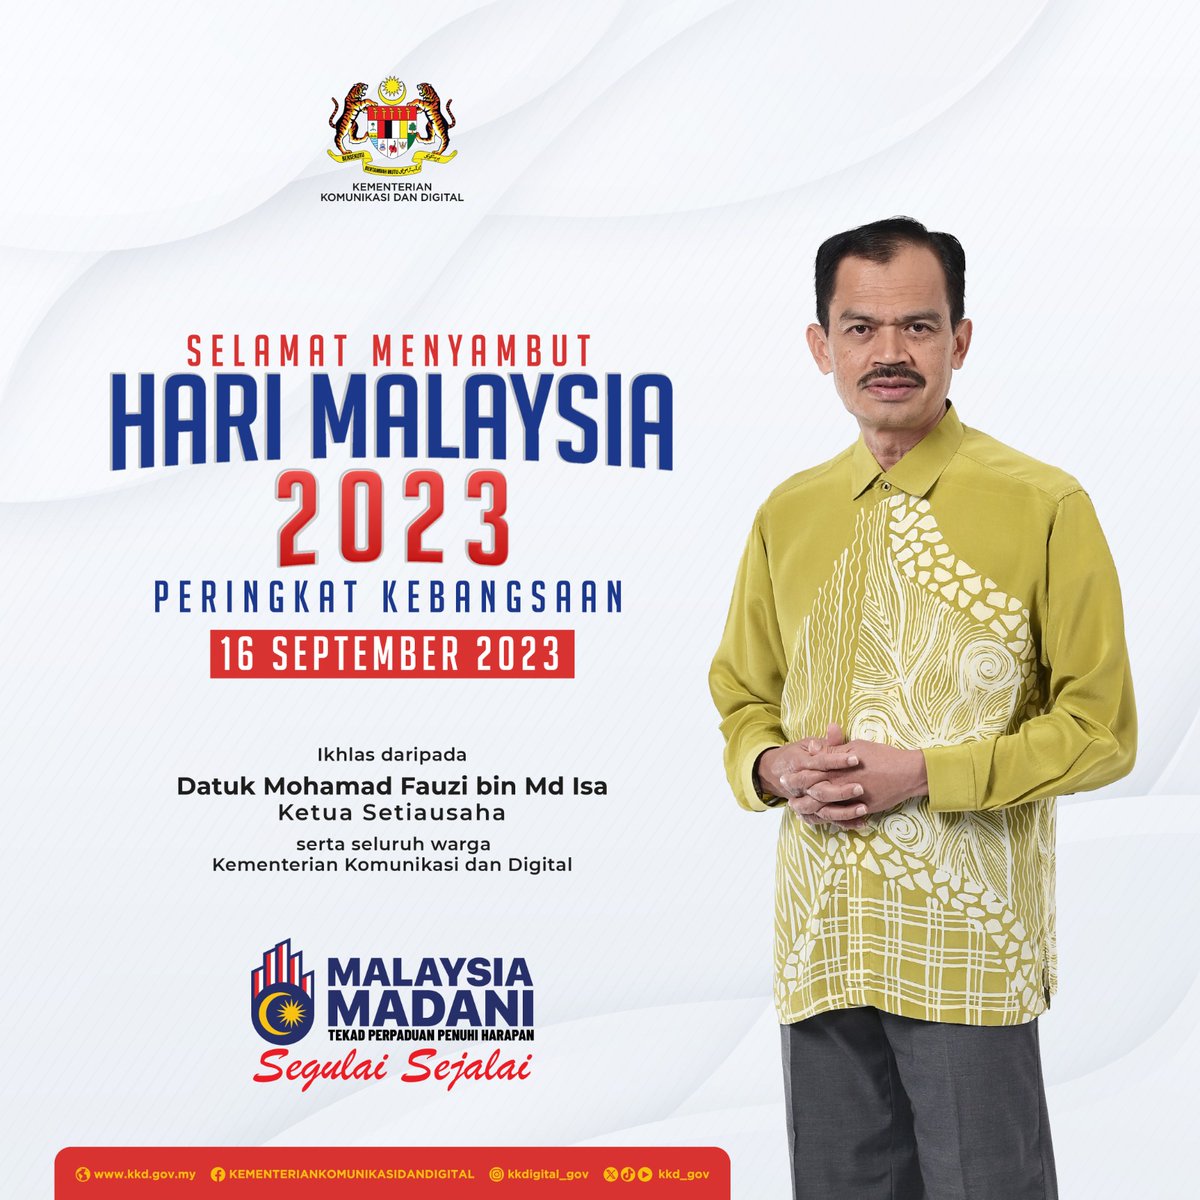 Selamat Menyambut Hari Malaysia 2023.

Bersama kita eratkan perpaduan antara kita dan meriahkan Sambutan Hari Malaysia 2023 pada 16 September di Stadium Perpaduan, Kuching, Sarawak.

#HKHM2023
#TekadPerpaduanPenuhiHarapan
#SegulaiSejalai
#MalaysiaMADANI